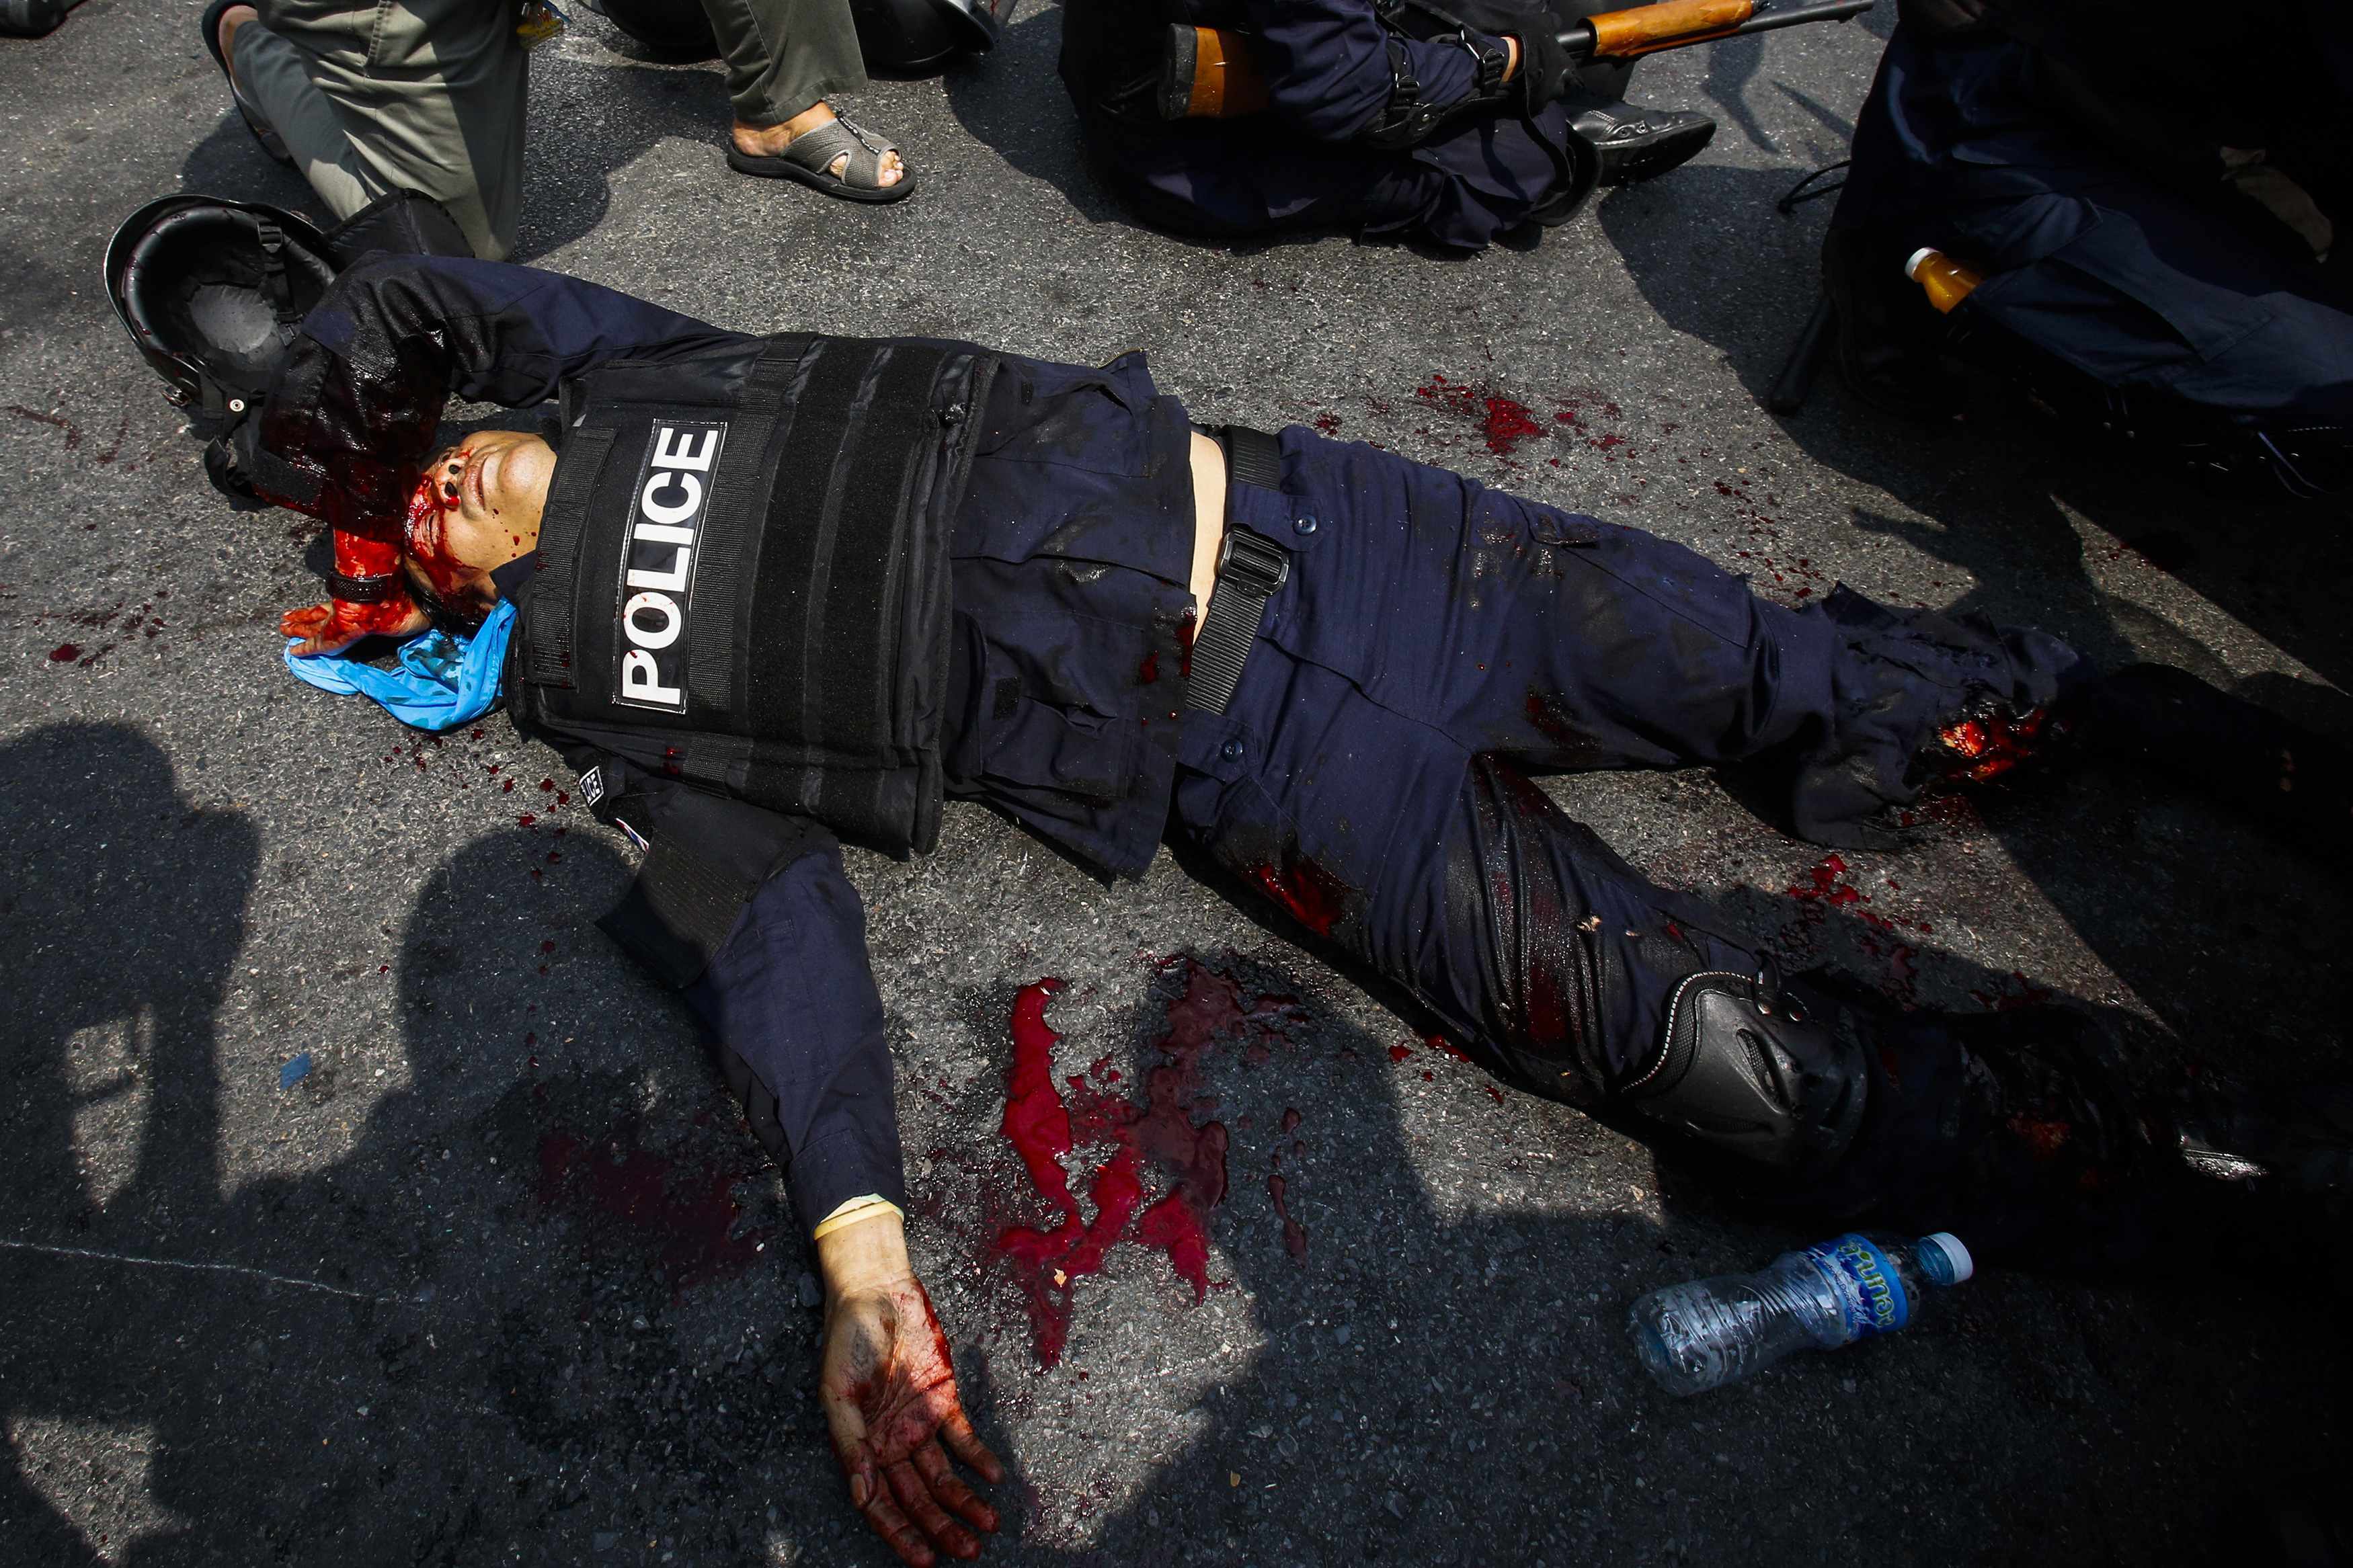 Τρεις οι νεκροί στις συγκρούσεις στη Ταϊλάνδη – Προσοχή σκληρές εικόνες